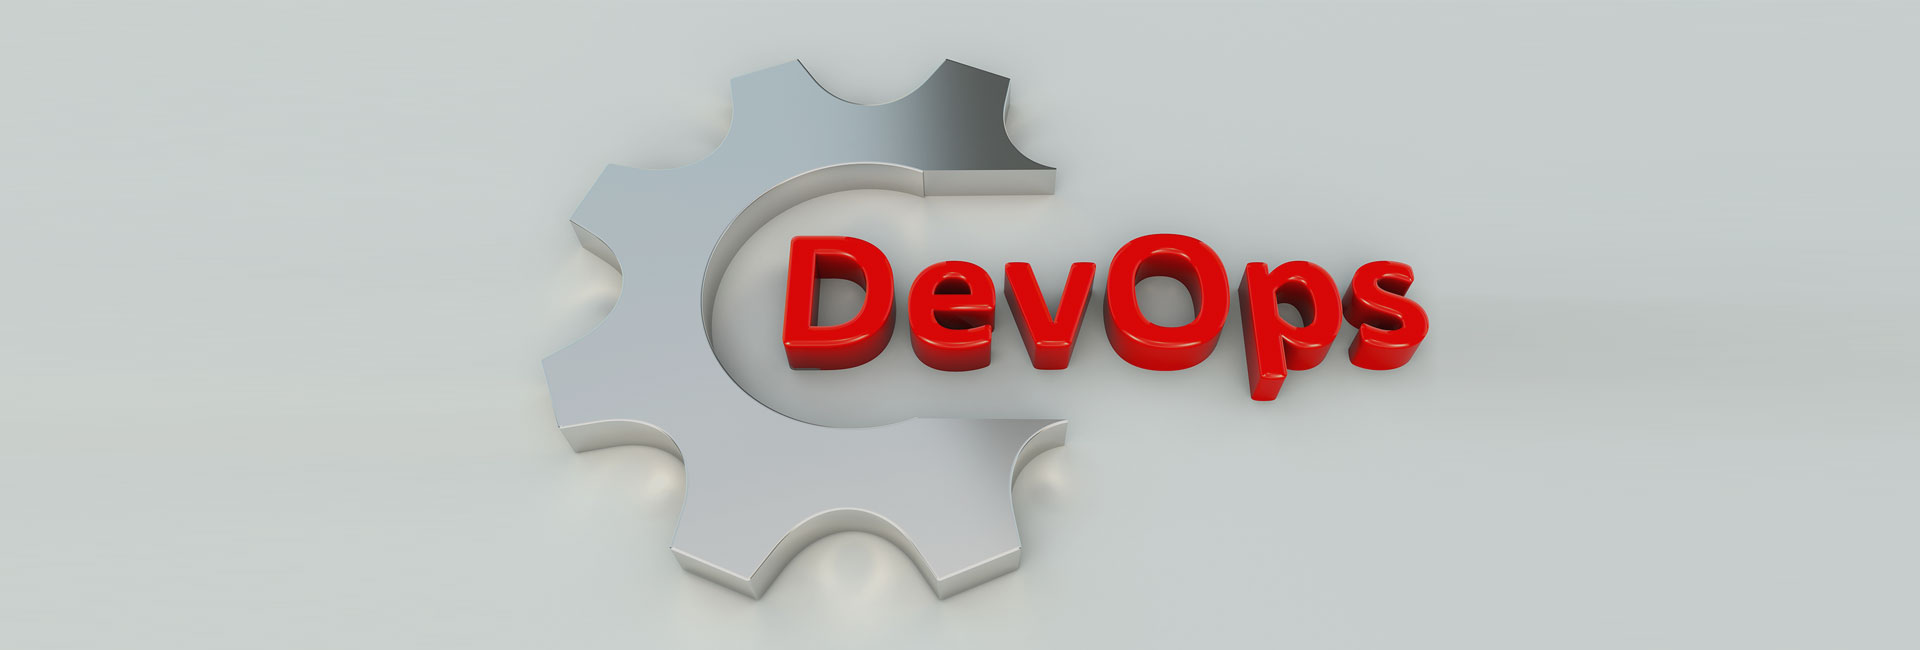 iEverware-DevOps